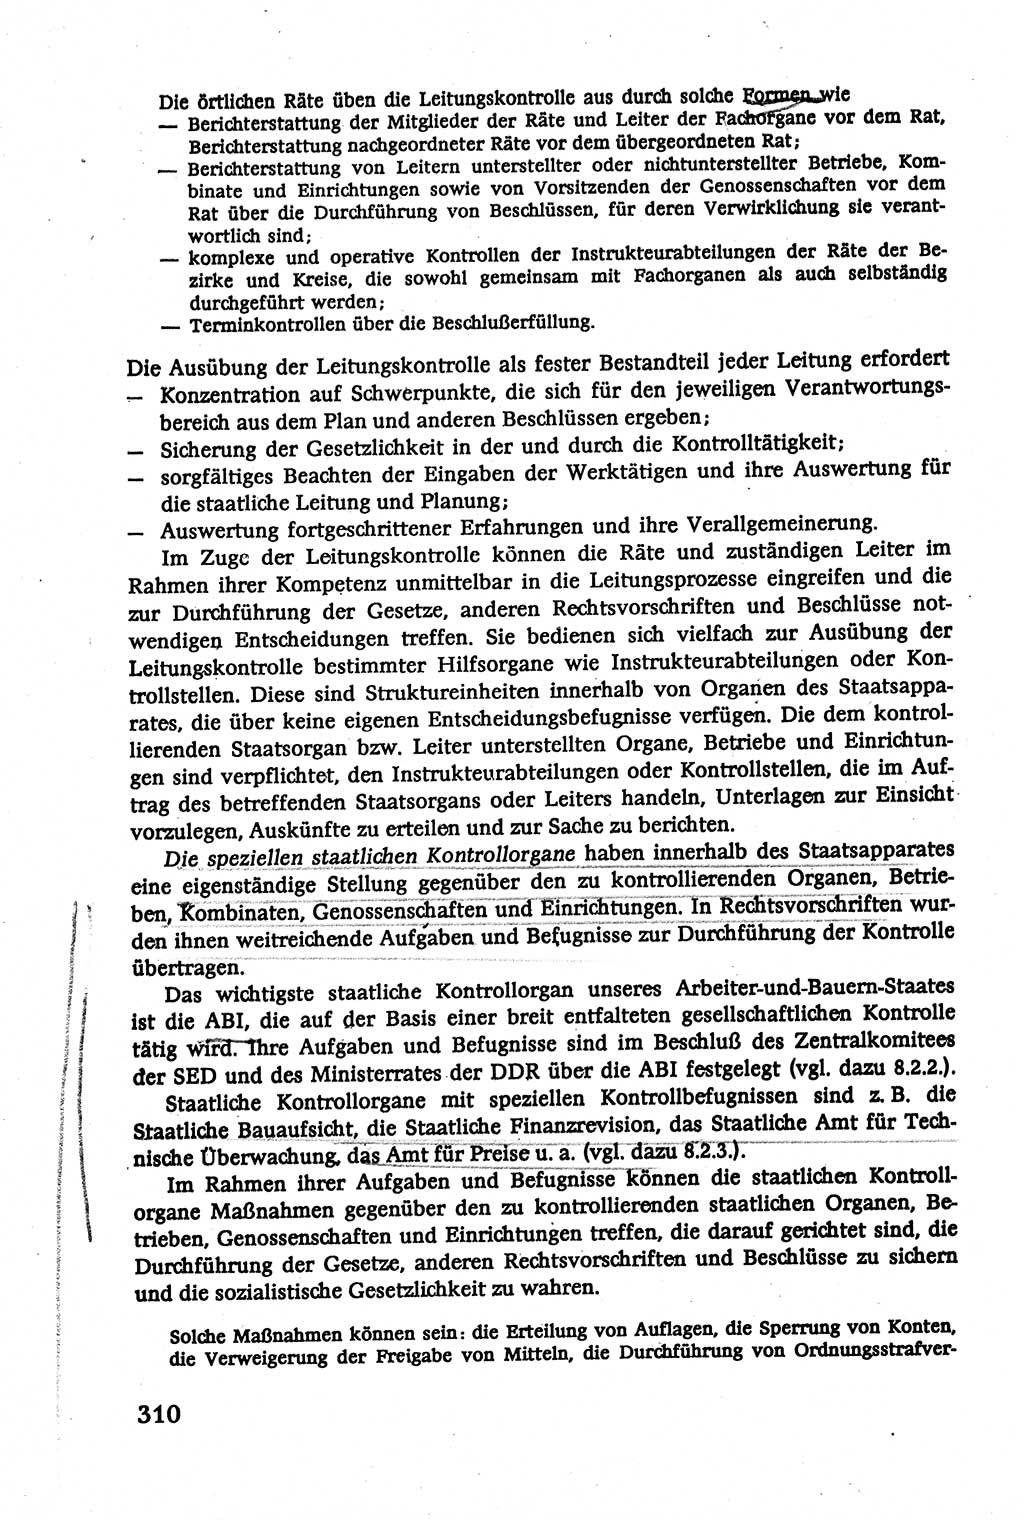 Verwaltungsrecht [Deutsche Demokratische Republik (DDR)], Lehrbuch 1979, Seite 310 (Verw.-R. DDR Lb. 1979, S. 310)